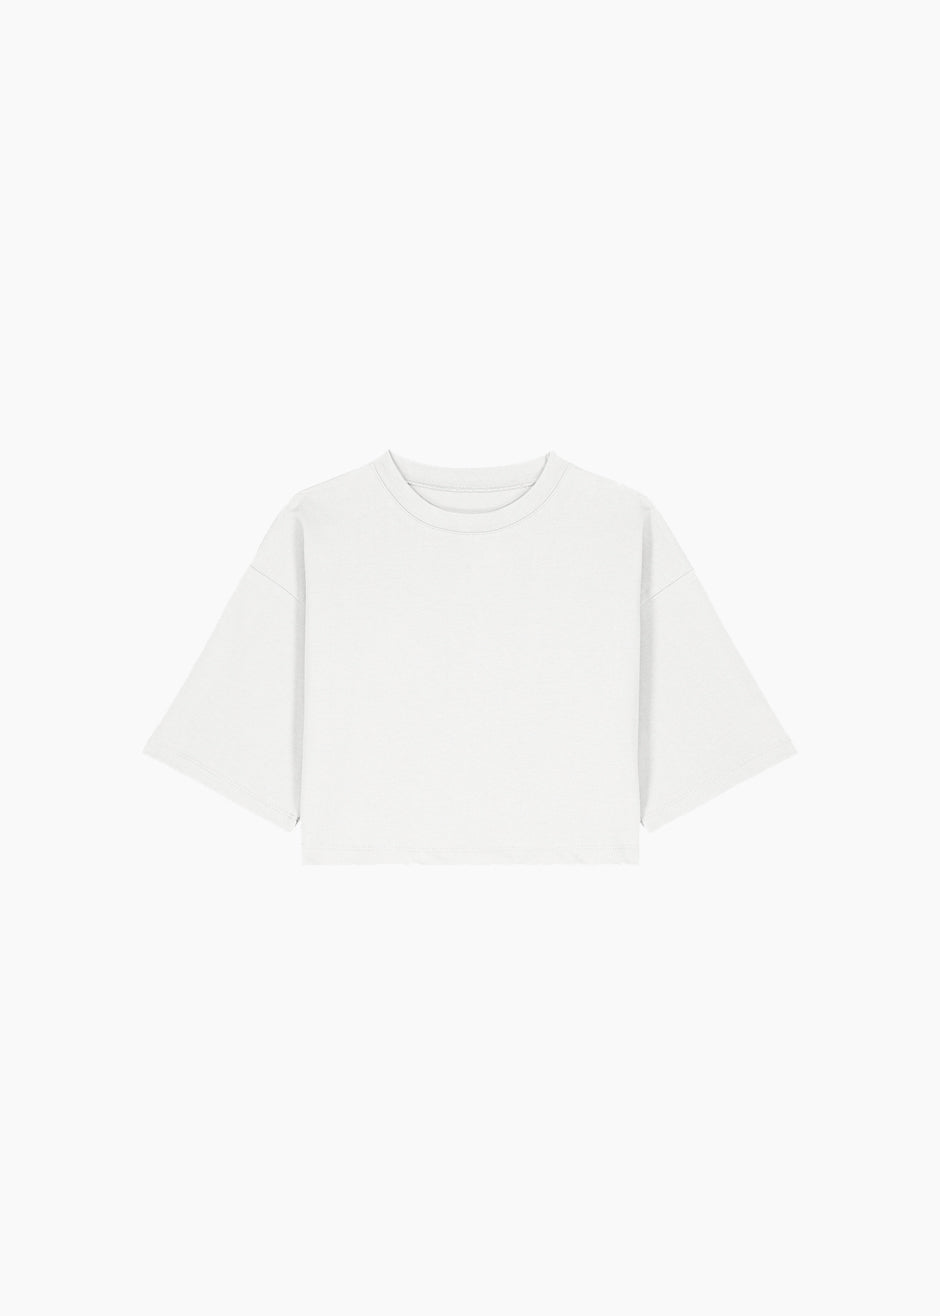 Karina Cropped T-Shirt - White - 15